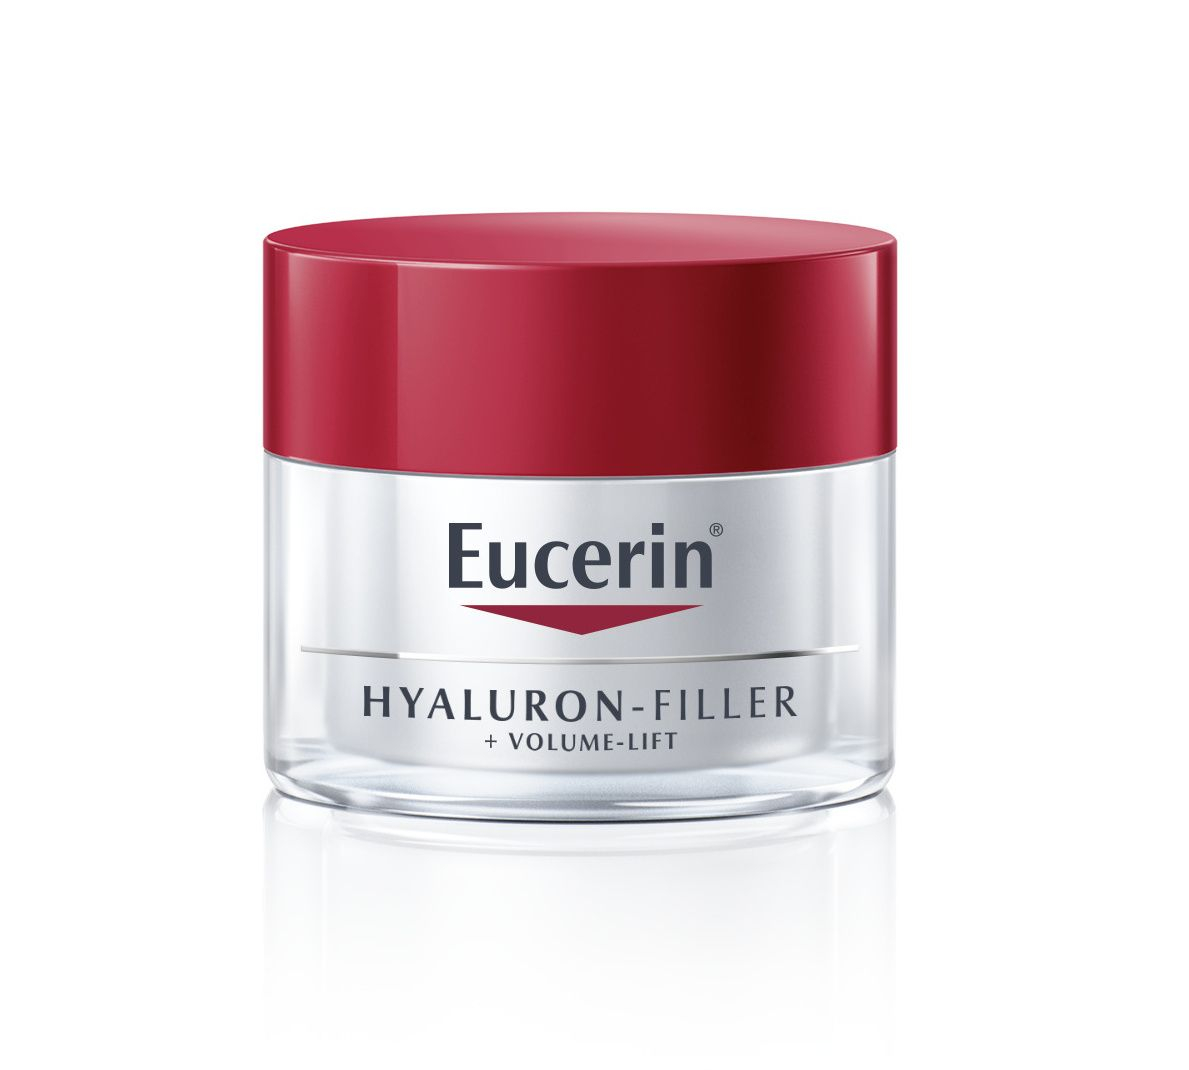 Eucerin Hyaluron-Filler + Volume-Lift denní krém pro normální až smíšenou pleť 50 ml Eucerin